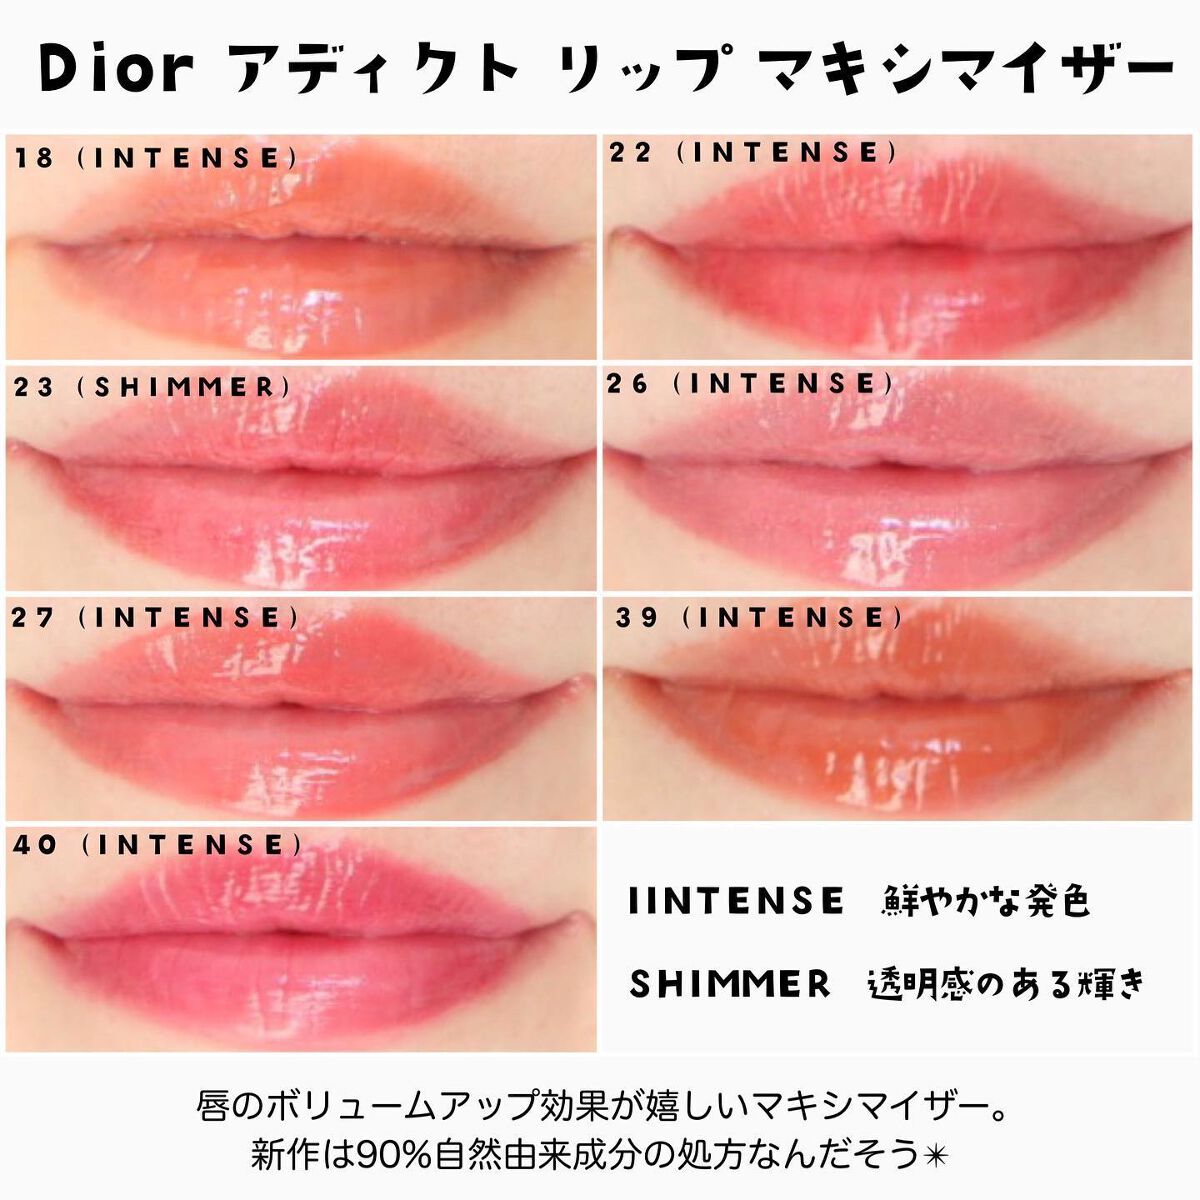 Dior♡マキシマイザー038♡ローズヌード